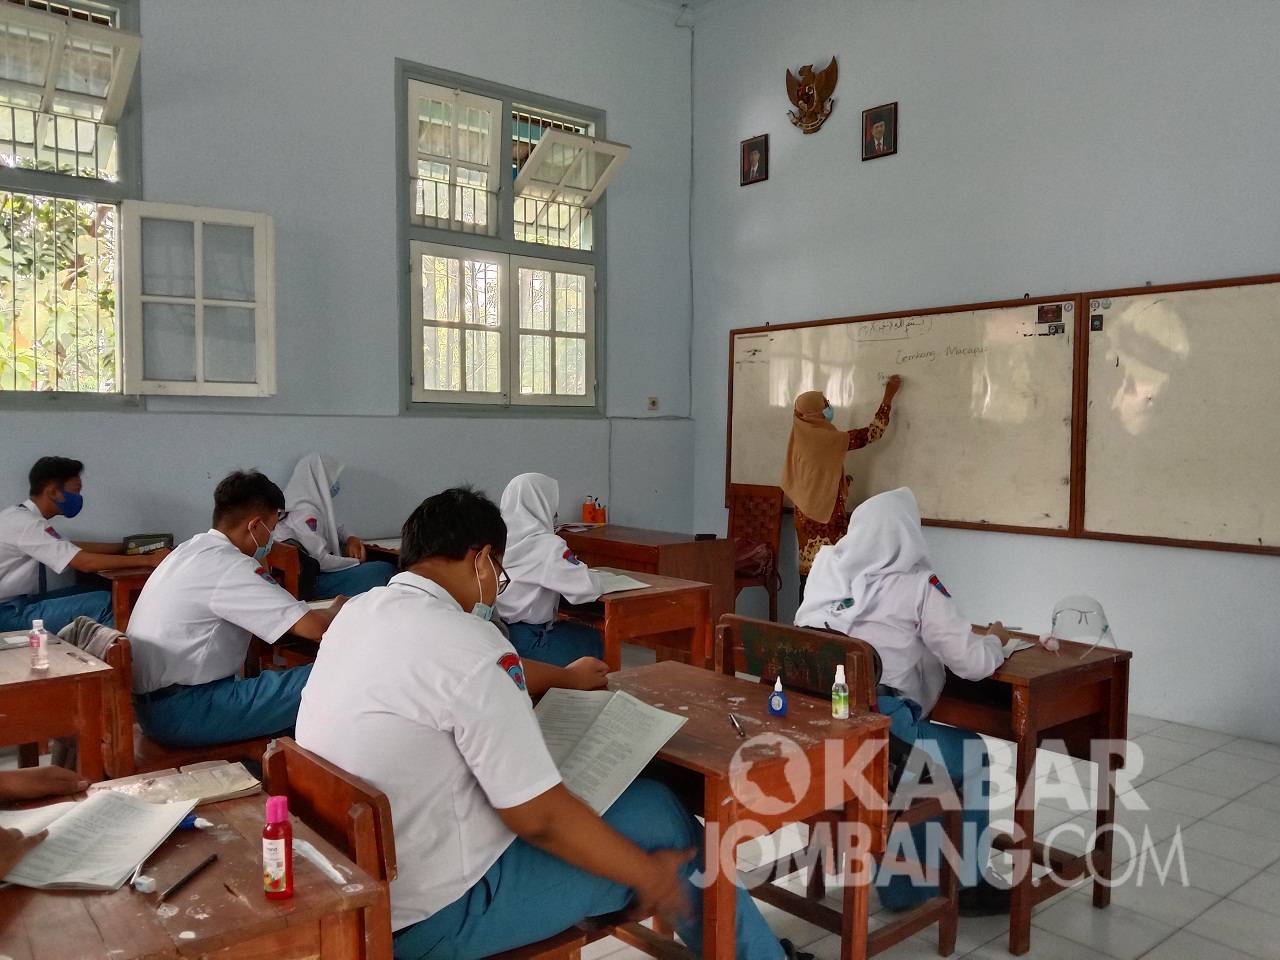 Pelaksanaan sekolah tatap muka di Kabupaten Jombang, Selasa (6/4/2021). KabarJombang.com/Anggraini Dwi/